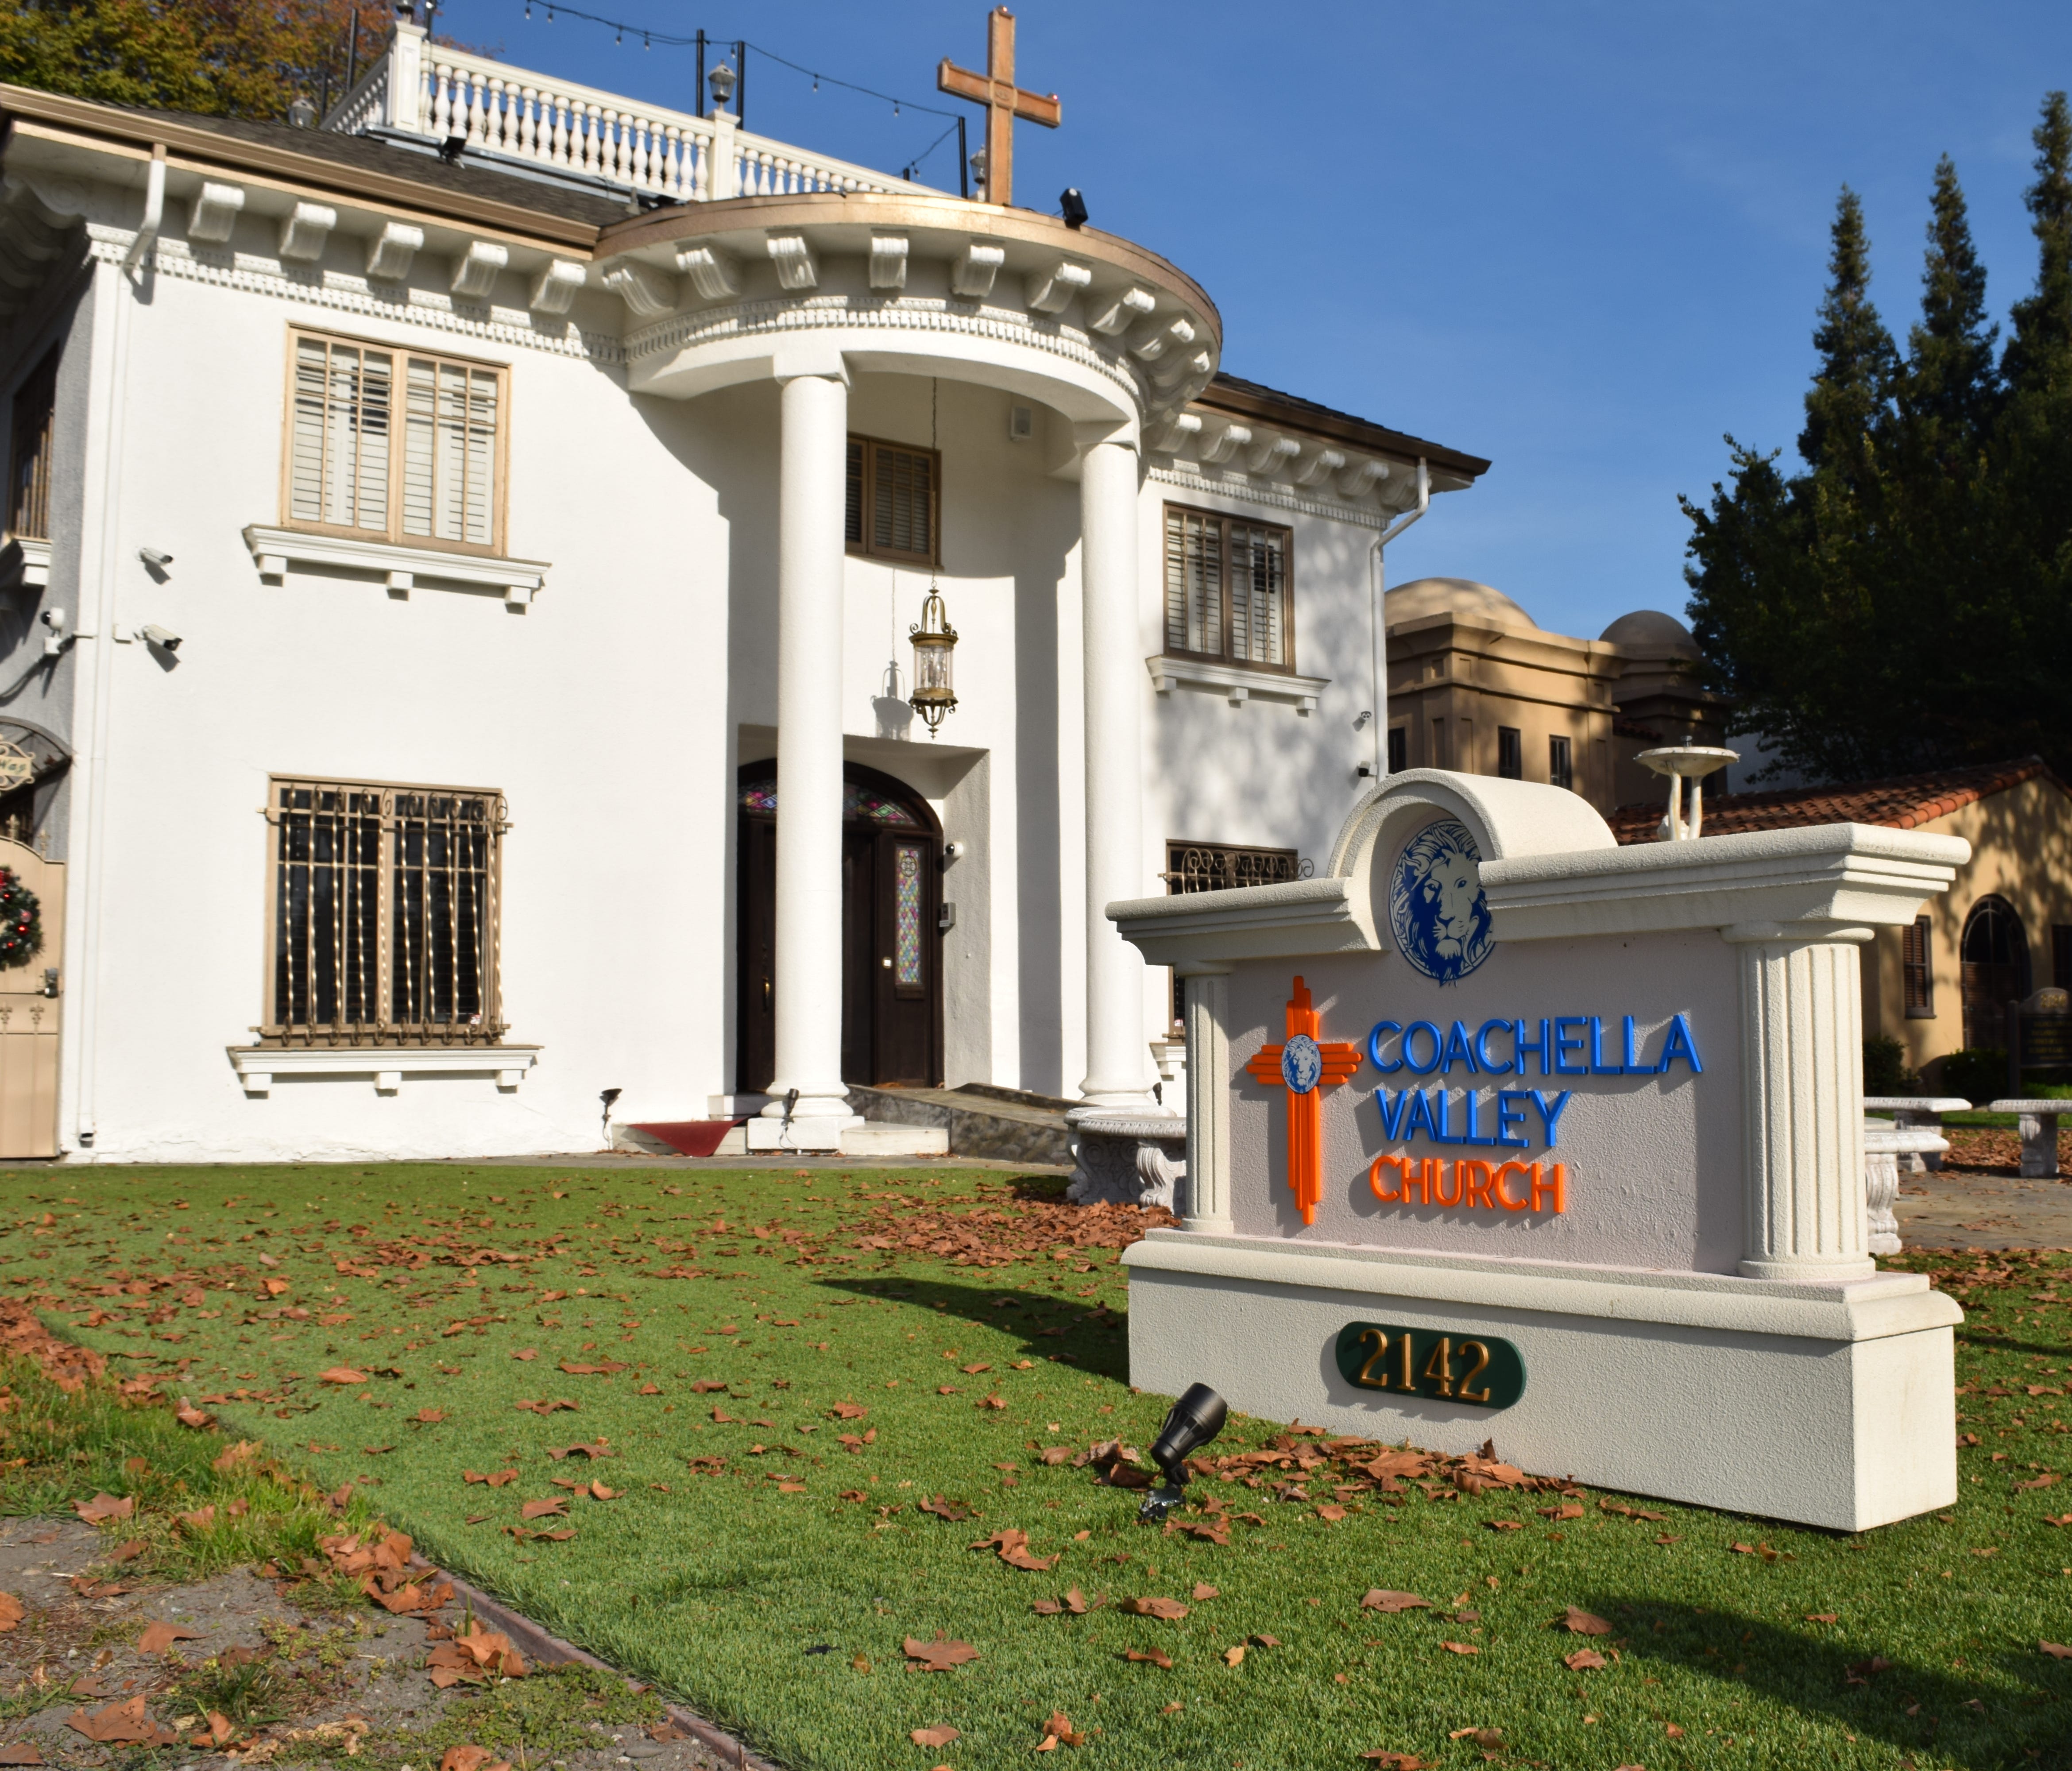 Despite its mainstream Christian trappings, the Coachella Valley Church in San Jose, California, describes itself as a Rastafarian church.